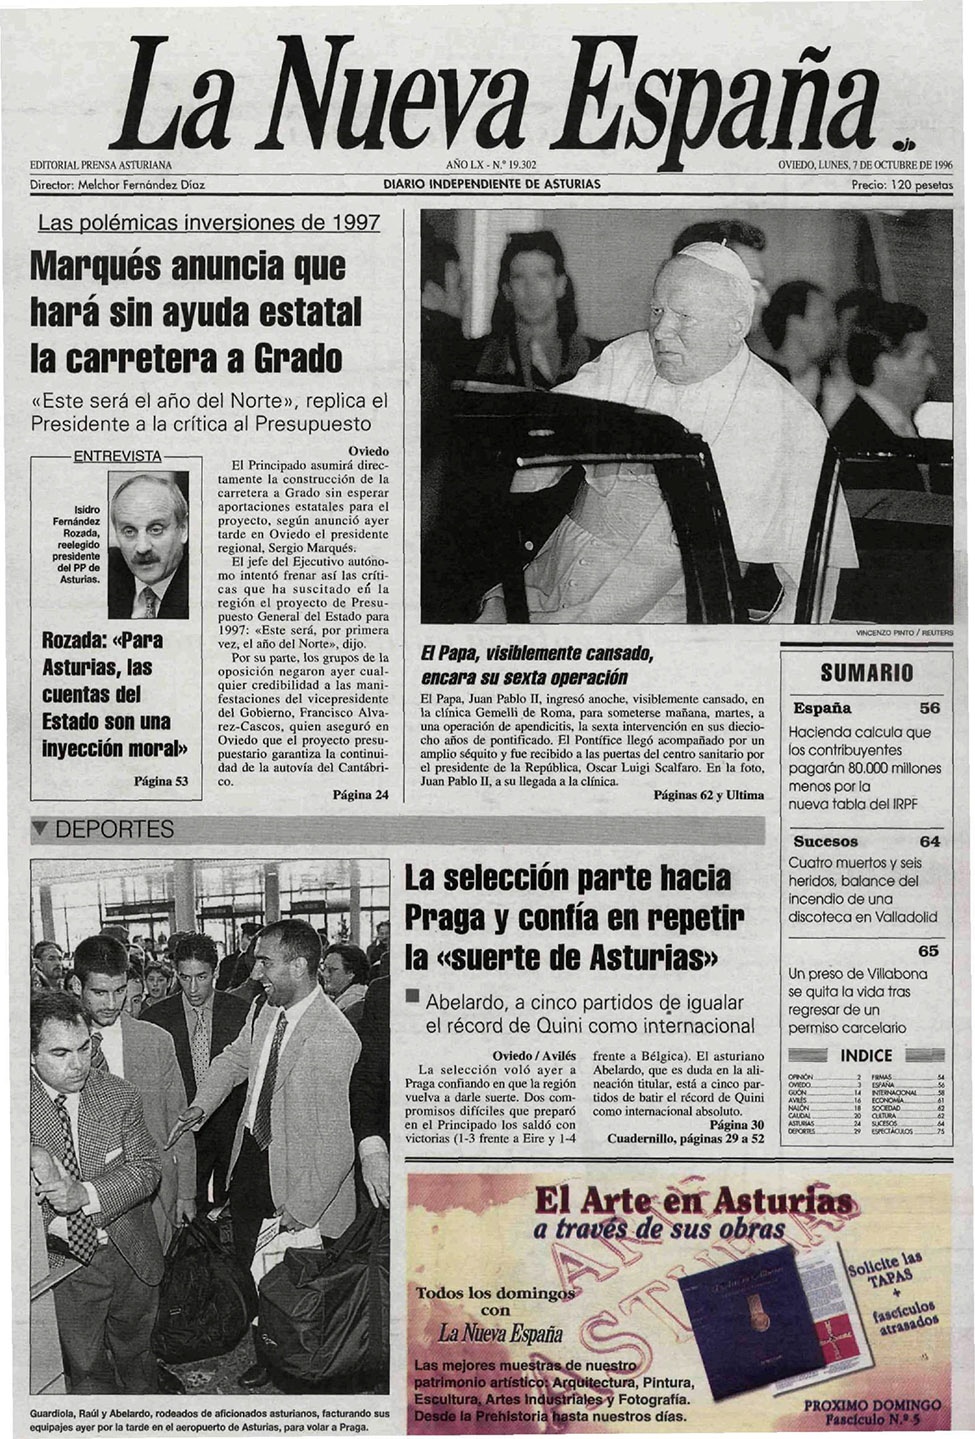 Portada del Lunes, 7 de Octubre de 1996